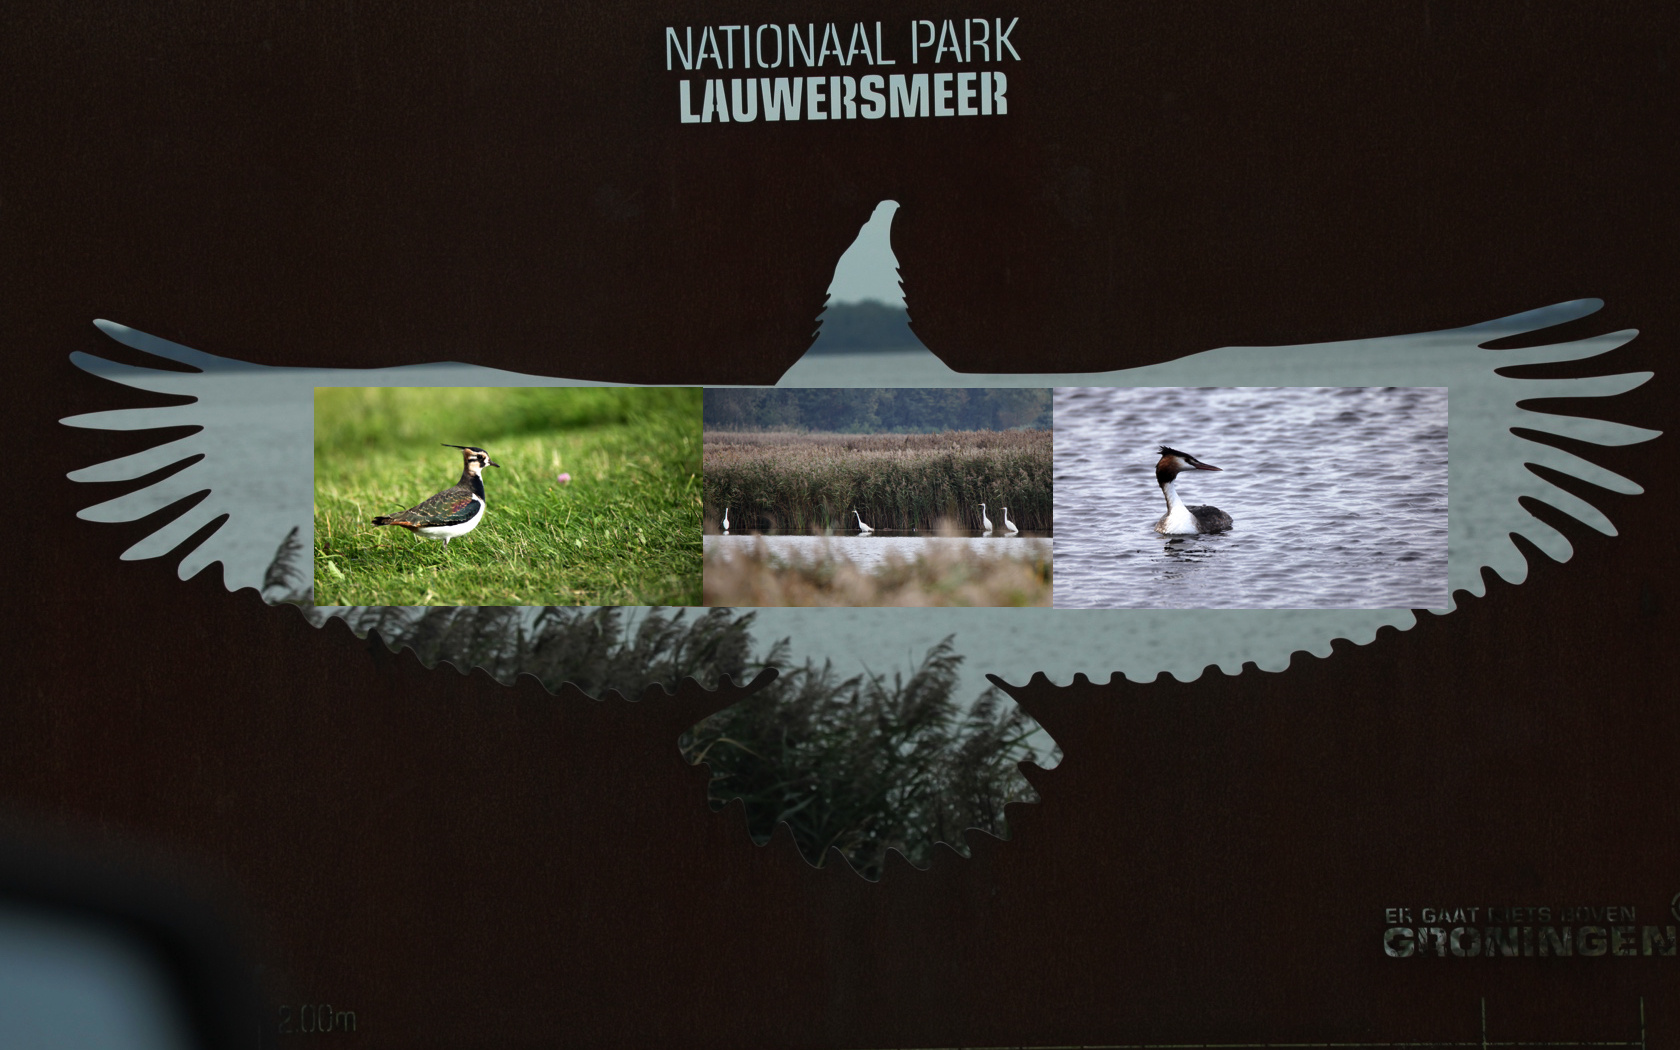 Dieses neue beeindruckende Hinweisschild im Lauwersmeer/Nationalpark....